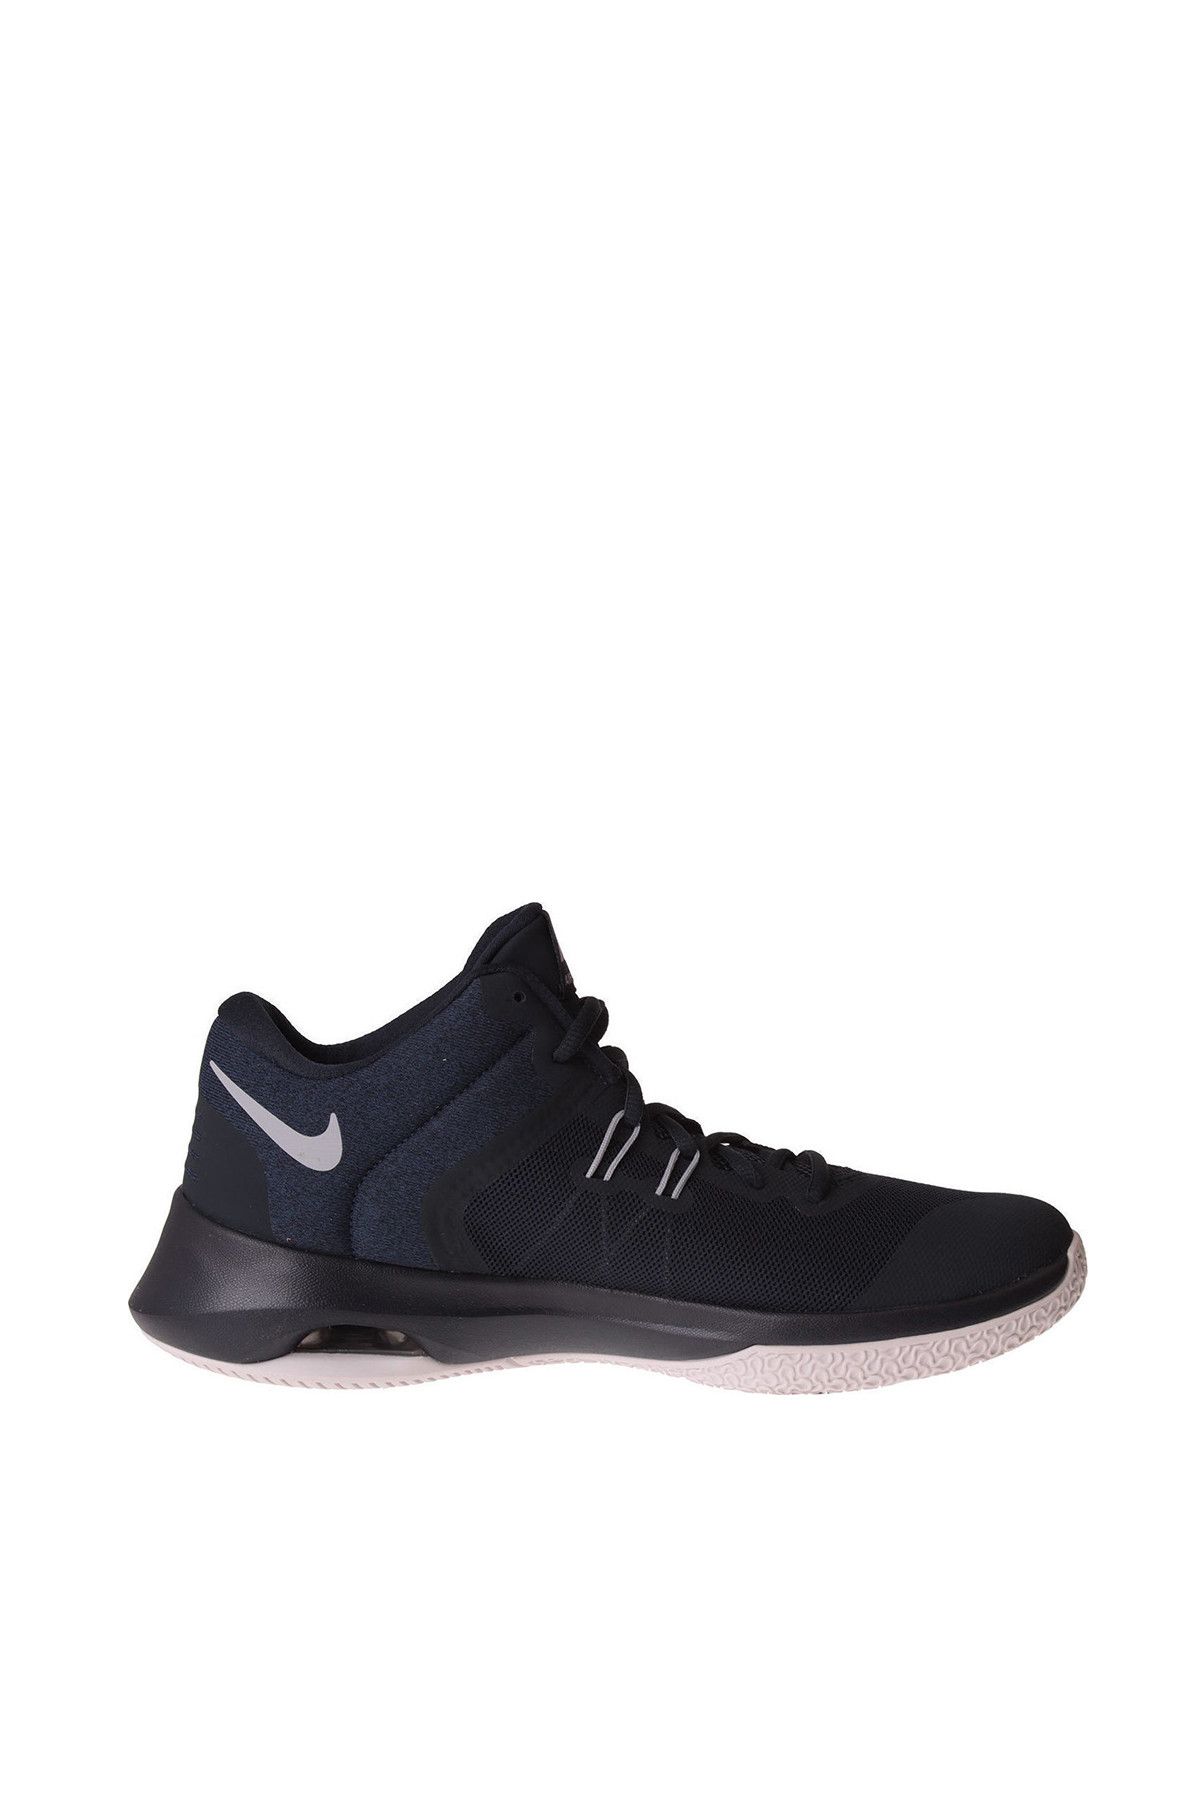 Nike Air Versitile 2 Basketbol Ayakkabısı - 921692-401